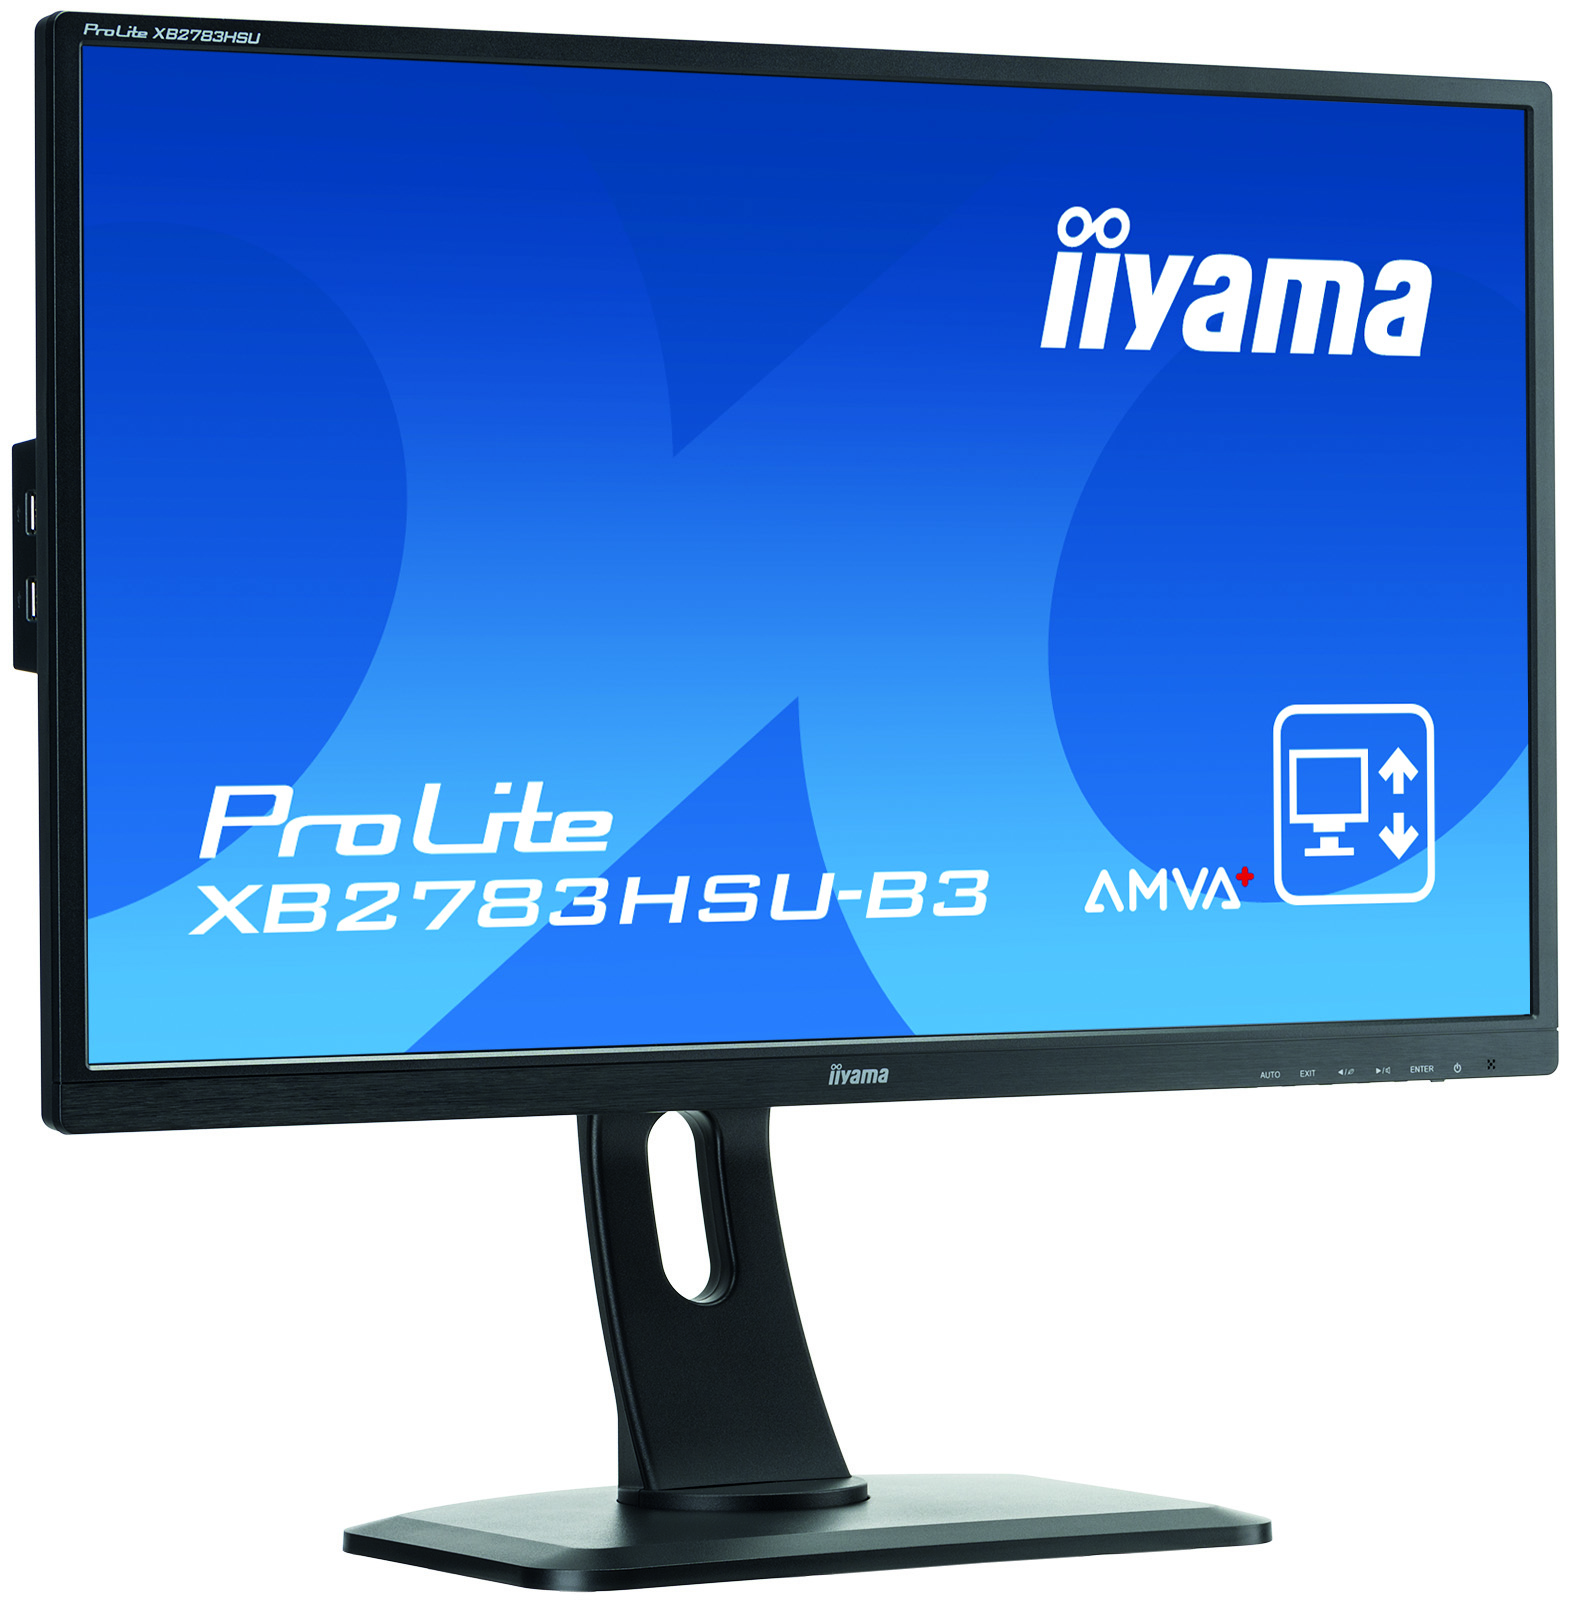 iiyama ProLite XB2783HSU-B3 computer monitor